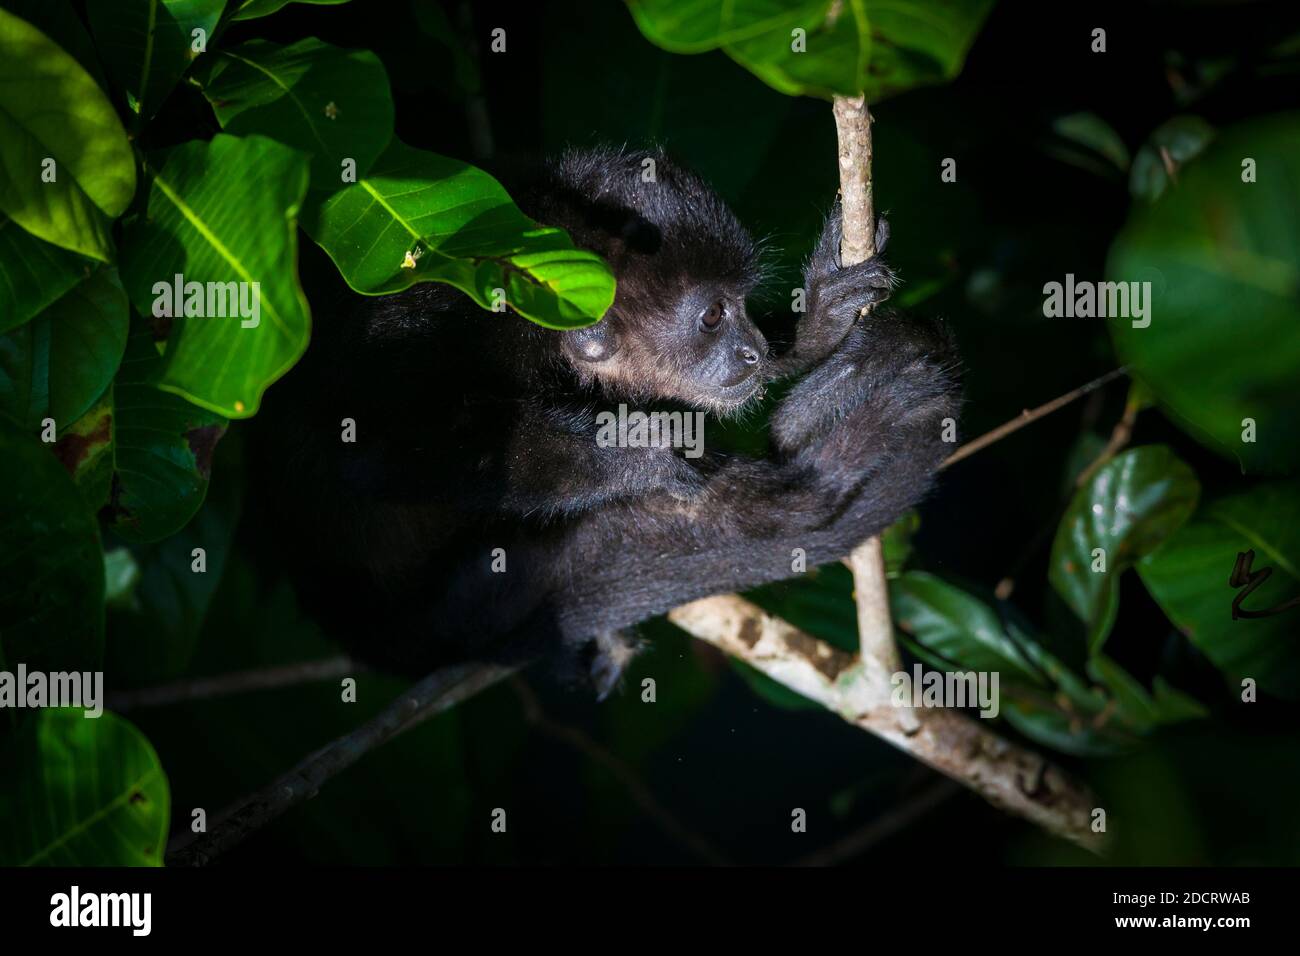 Panama fauna selvatica con una giovane scimmia urlata, Alouatta palliata, nella foresta pluviale del parco nazionale di Soberania, Repubblica di Panama. Foto Stock